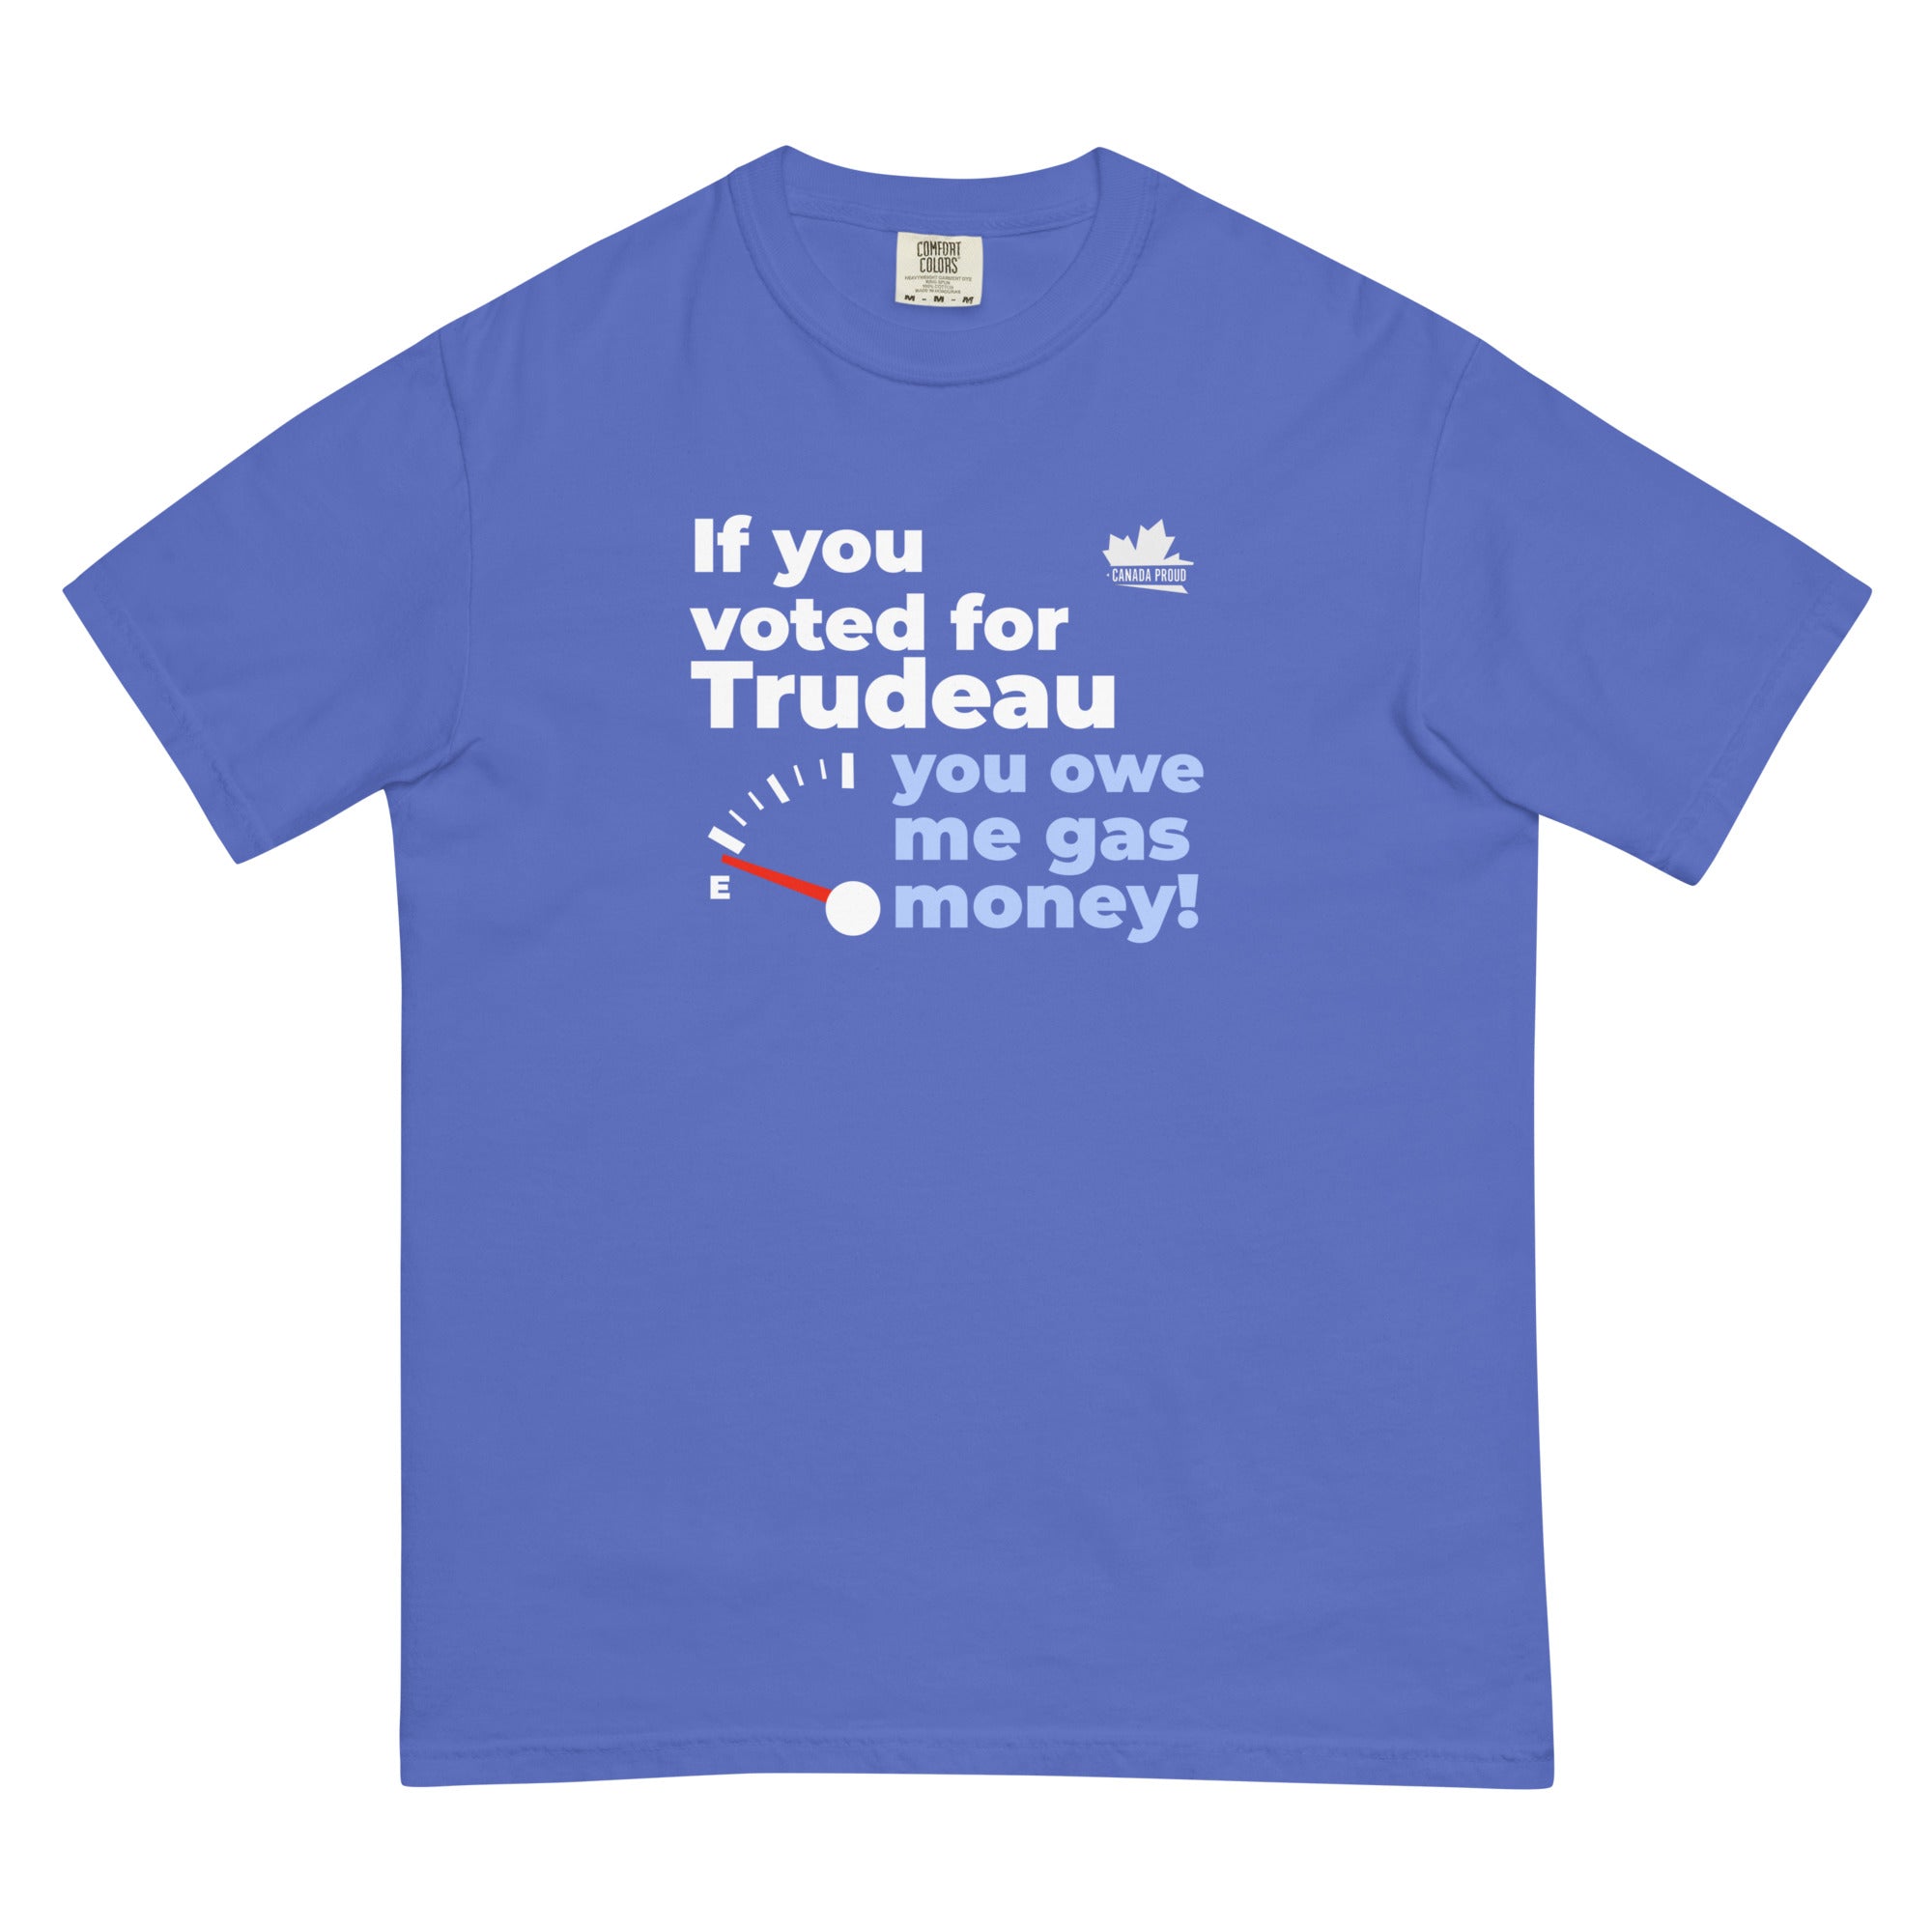 Men’s "You Owe Me Gas Money" t-shirt